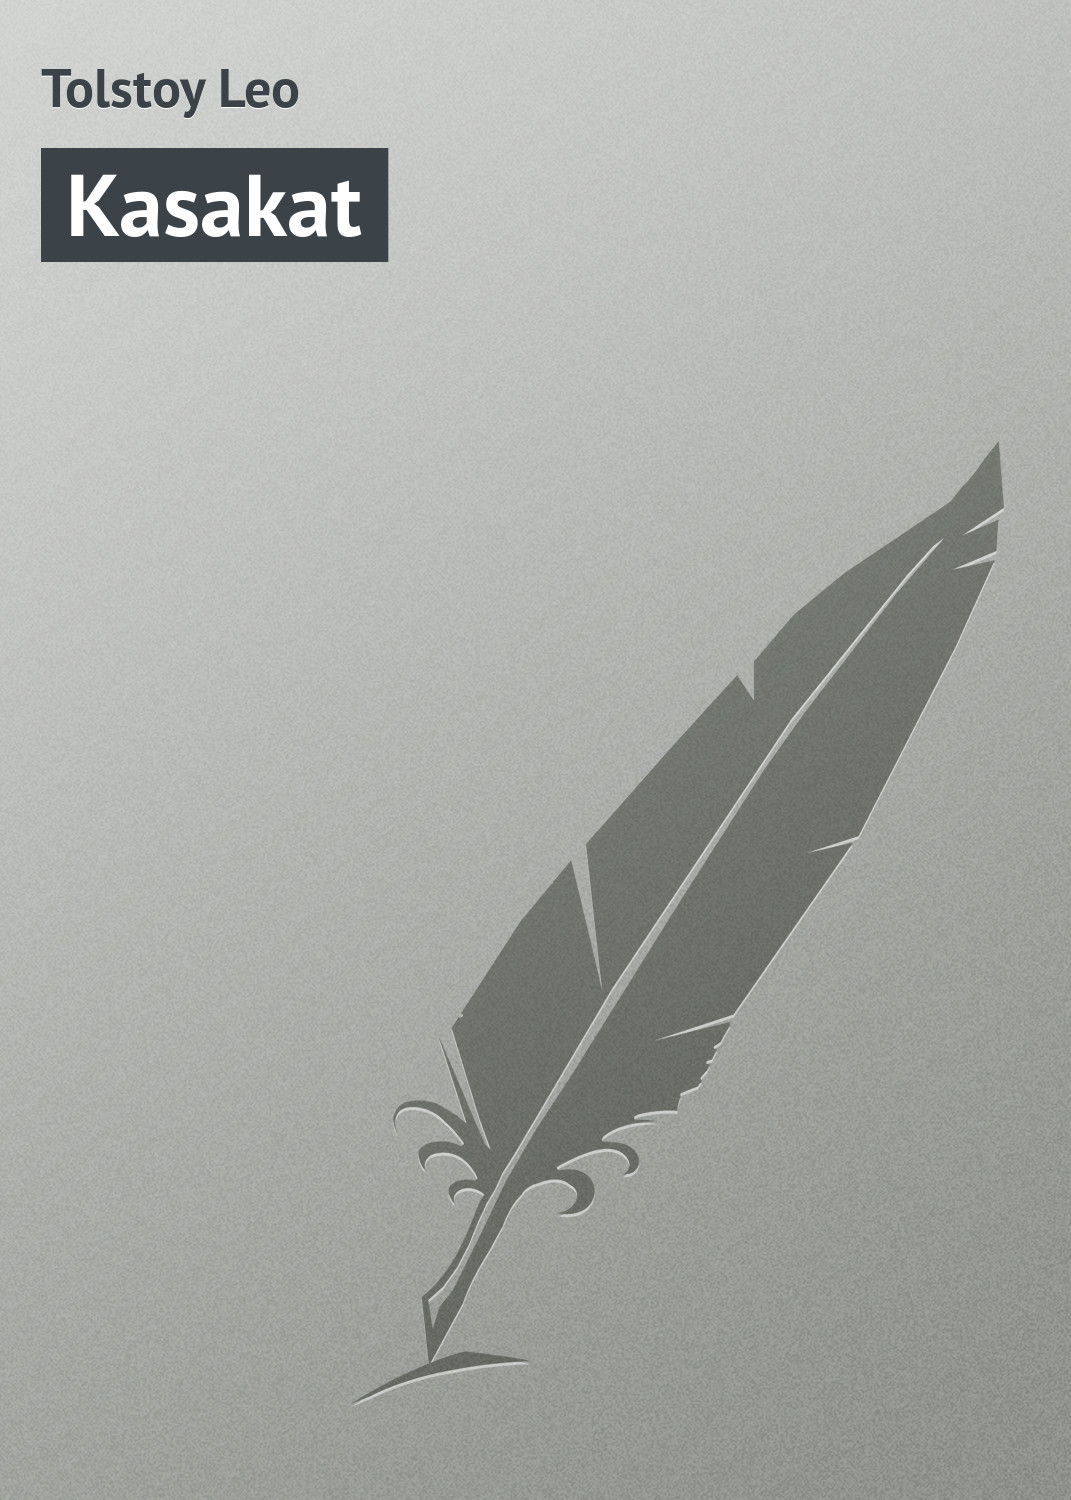 Книга Kasakat из серии , созданная Leo Tolstoy, может относится к жанру Литература 19 века, Русская классика, Классическая проза. Стоимость электронной книги Kasakat с идентификатором 23163027 составляет 5.99 руб.